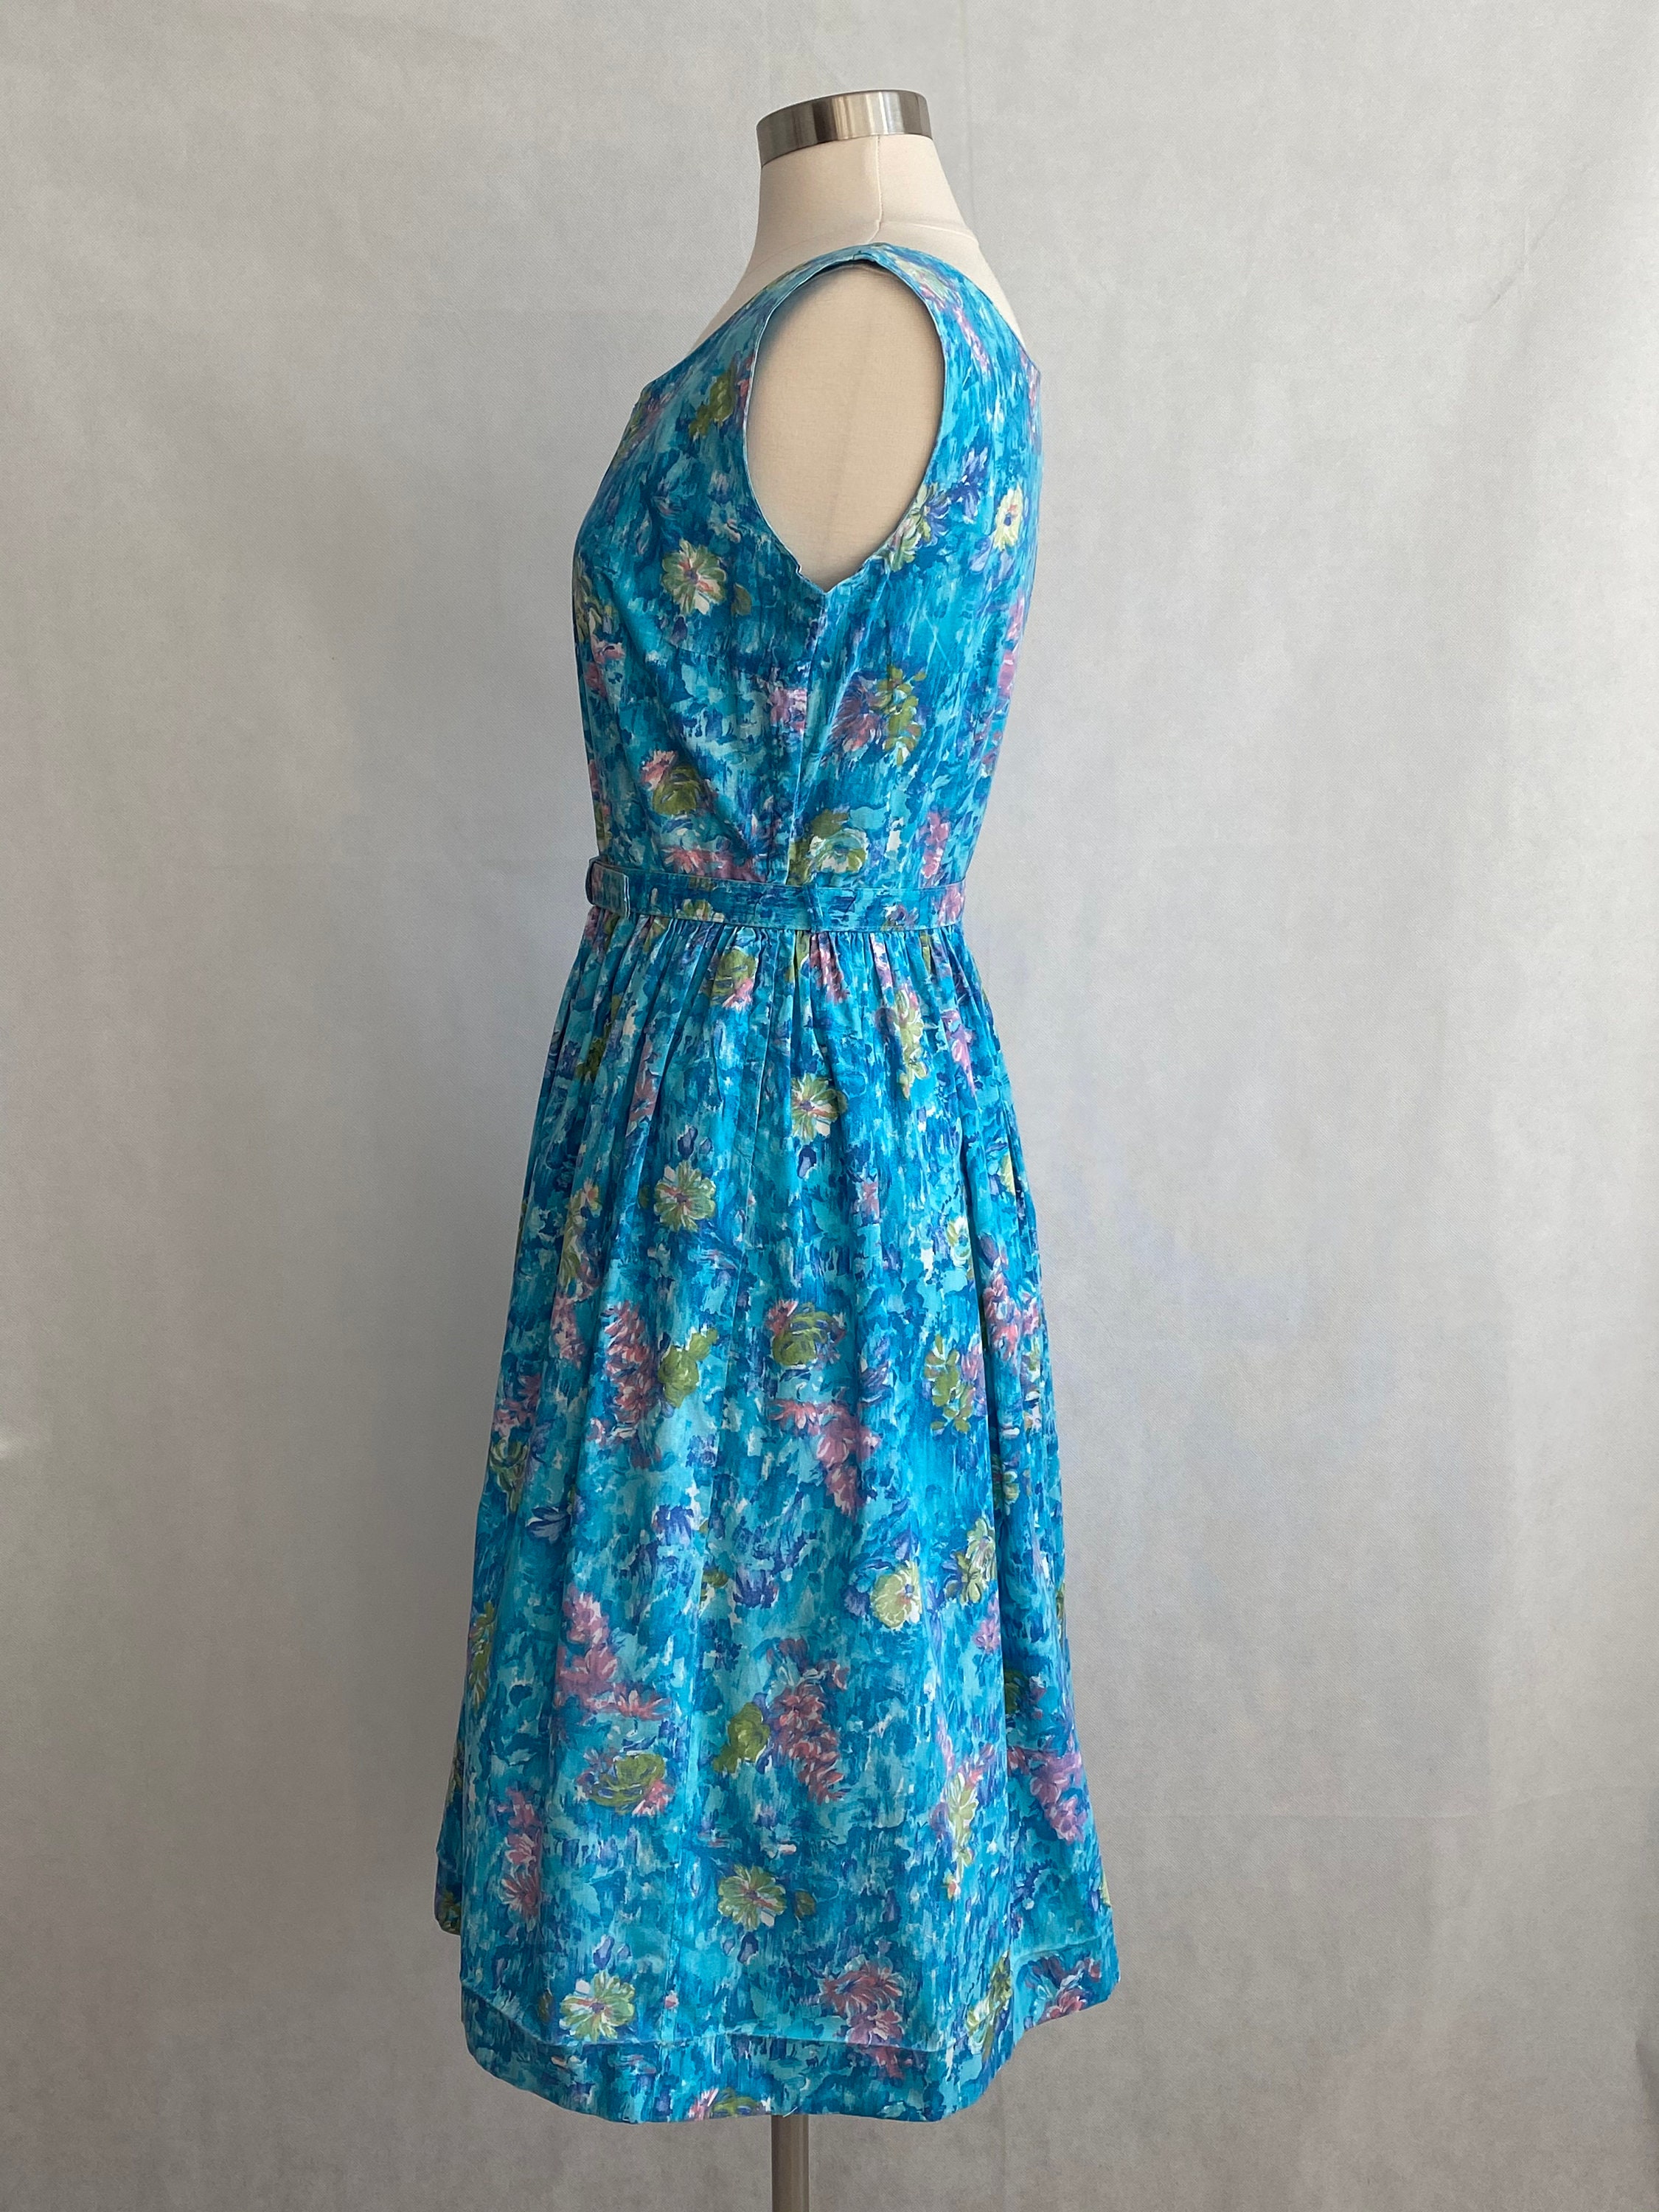 Vintage 50's Blue Floral Day Dress Vintage Fashion - Etsy